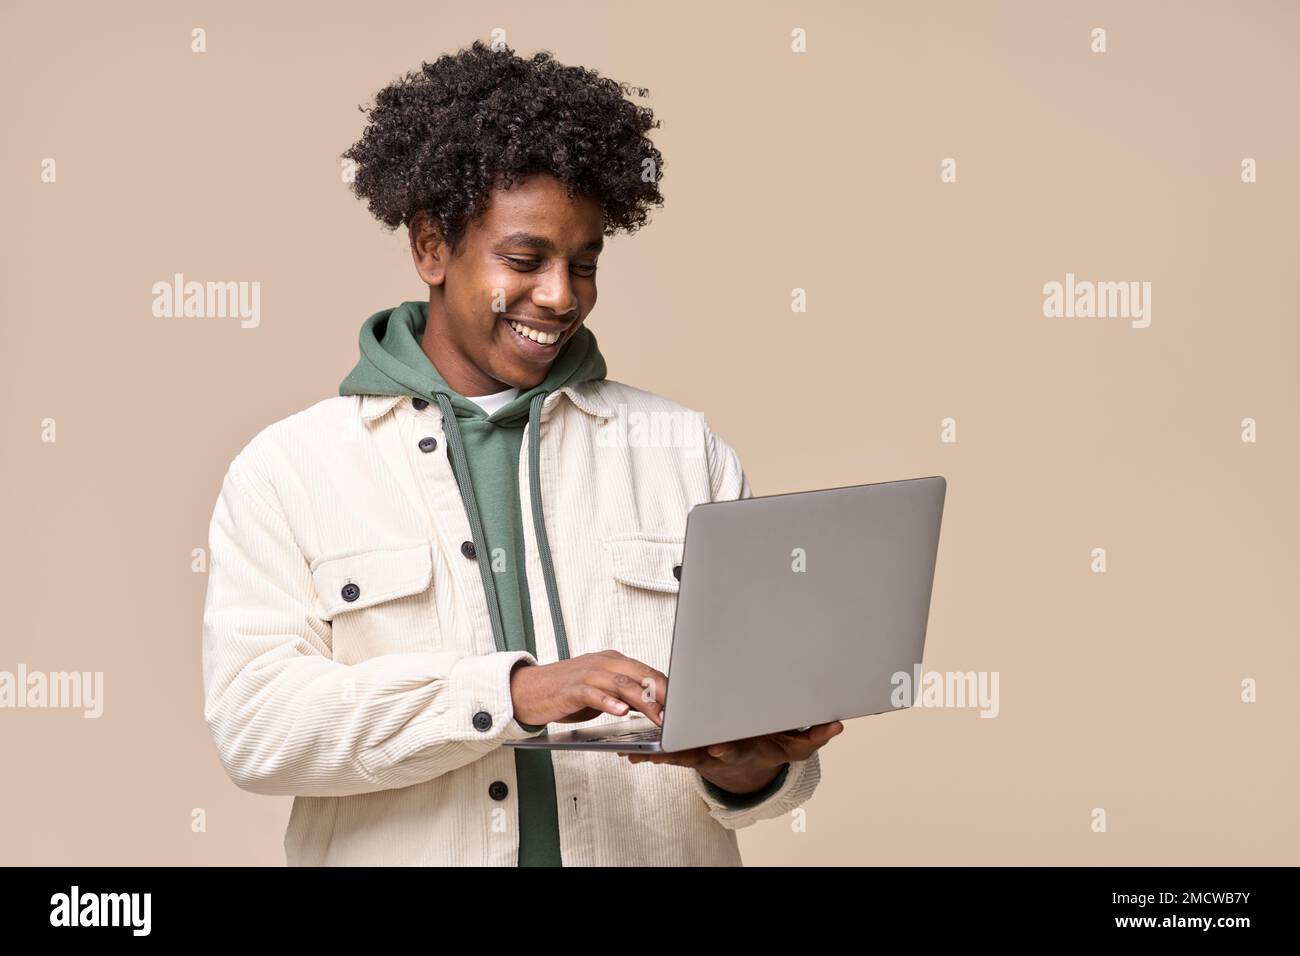 Un étudiant afro-américain souriant utilisant un ordinateur portable isolé sur fond beige. Banque D'Images